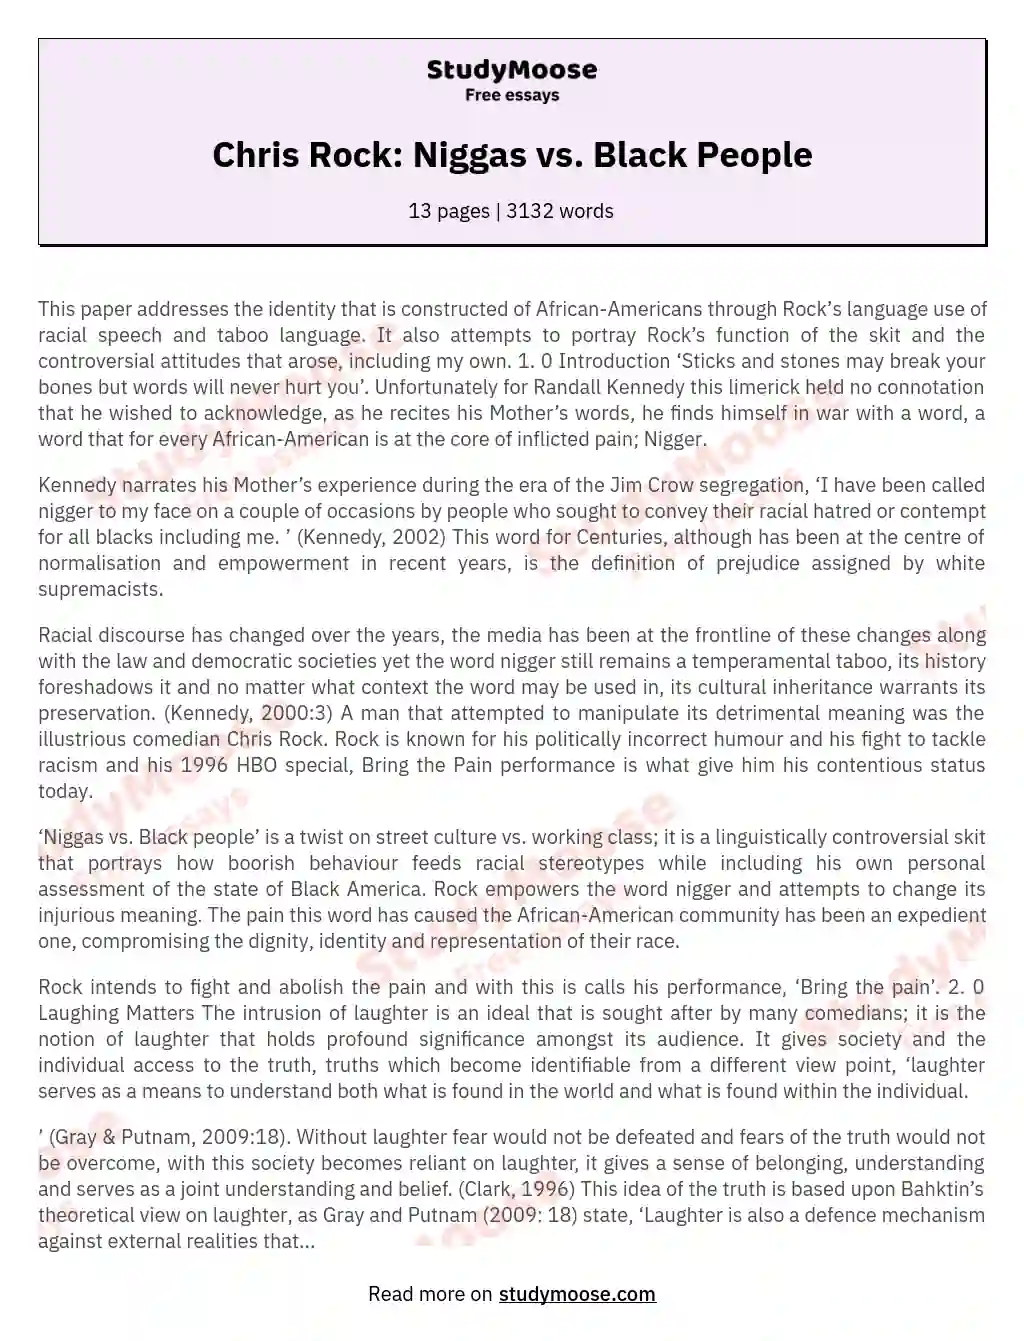 Chris Rock: Niggas vs. Black People essay